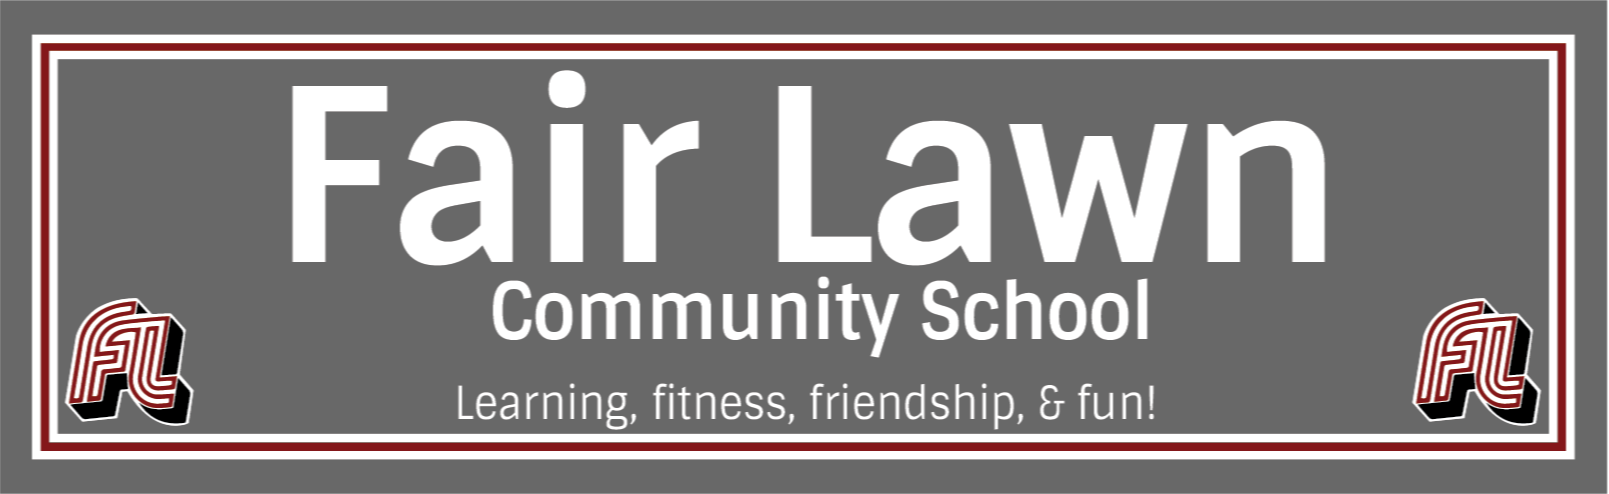 Community School Logo: Fair Lawn Community School : Learning, fitness, friendship, and fun!